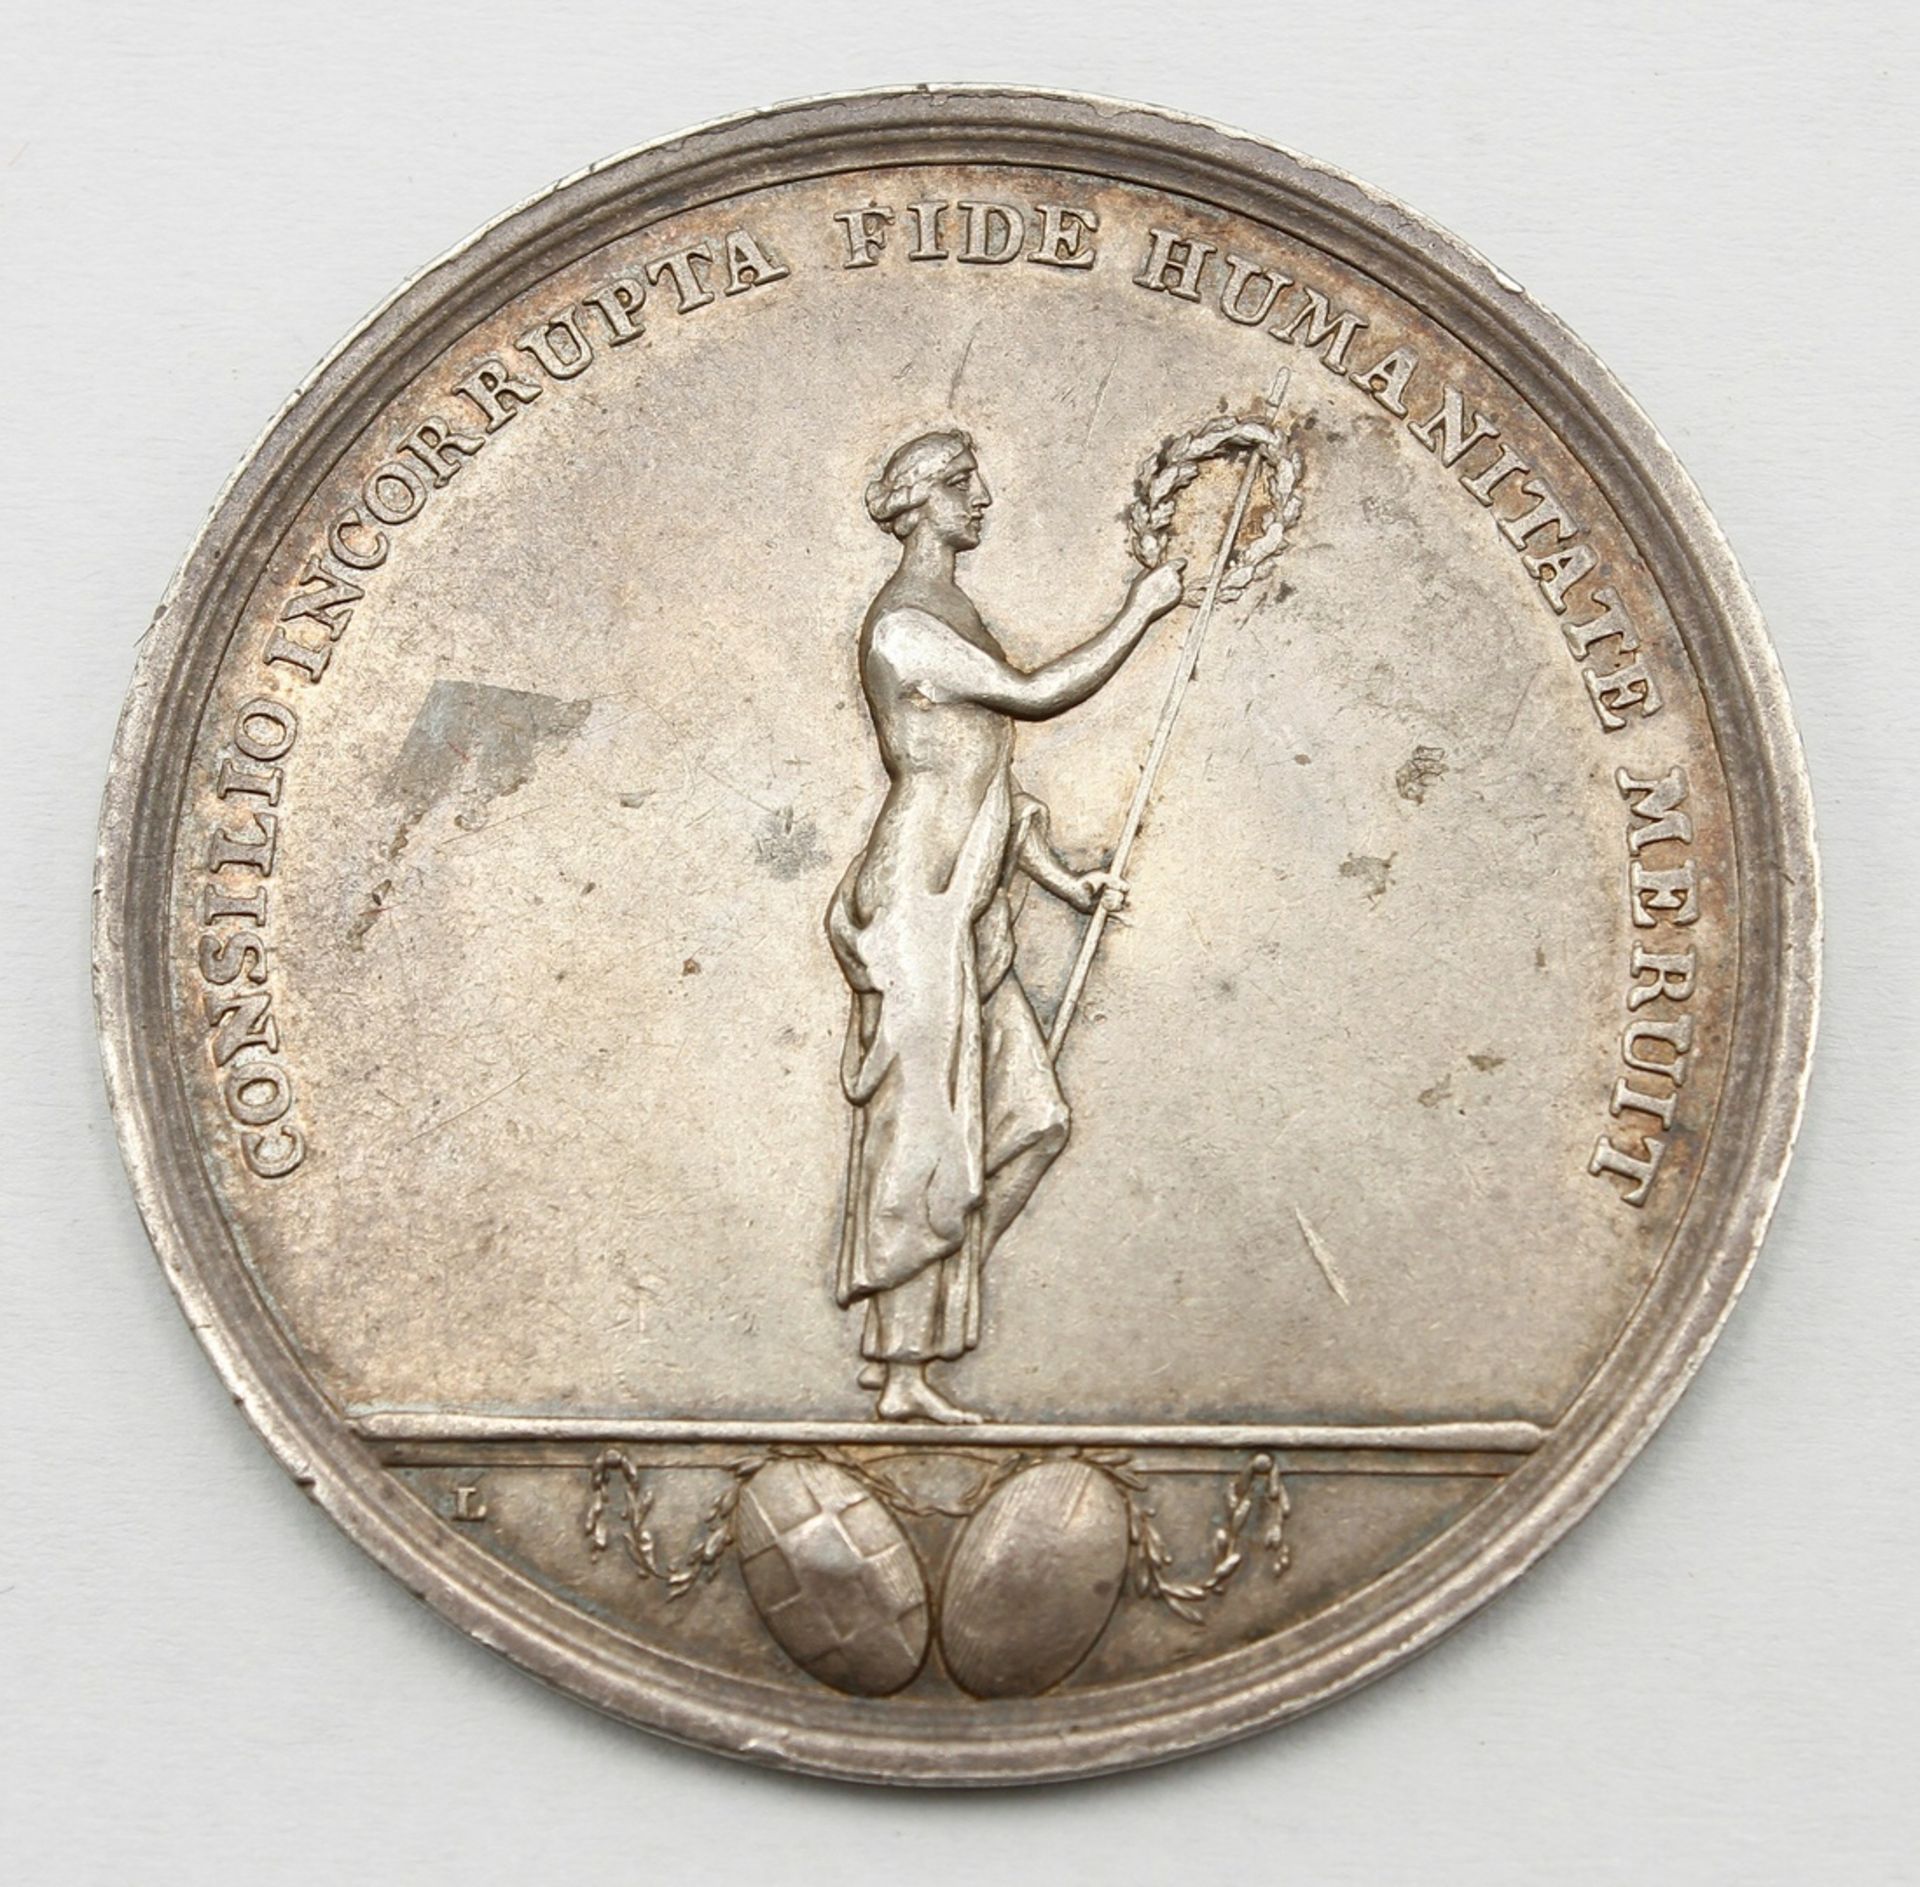 Jubiläums Medaille Halberstadt, 1802, J. J. Albert Hecht - Bild 2 aus 2